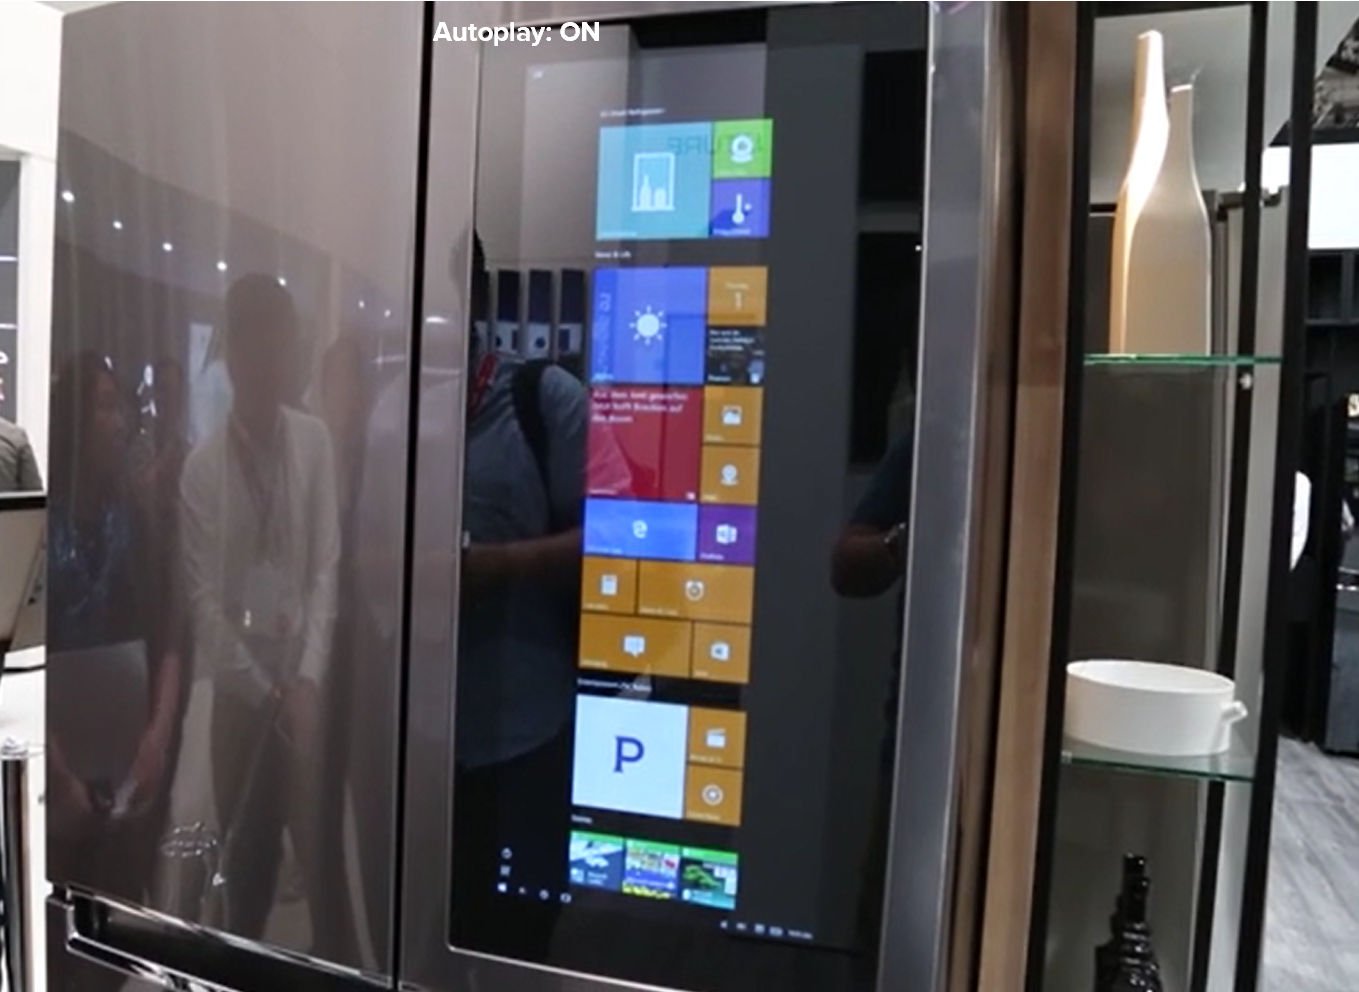 Chladnička Smart Instaview od LG so systémom Windows 10 stále funguje